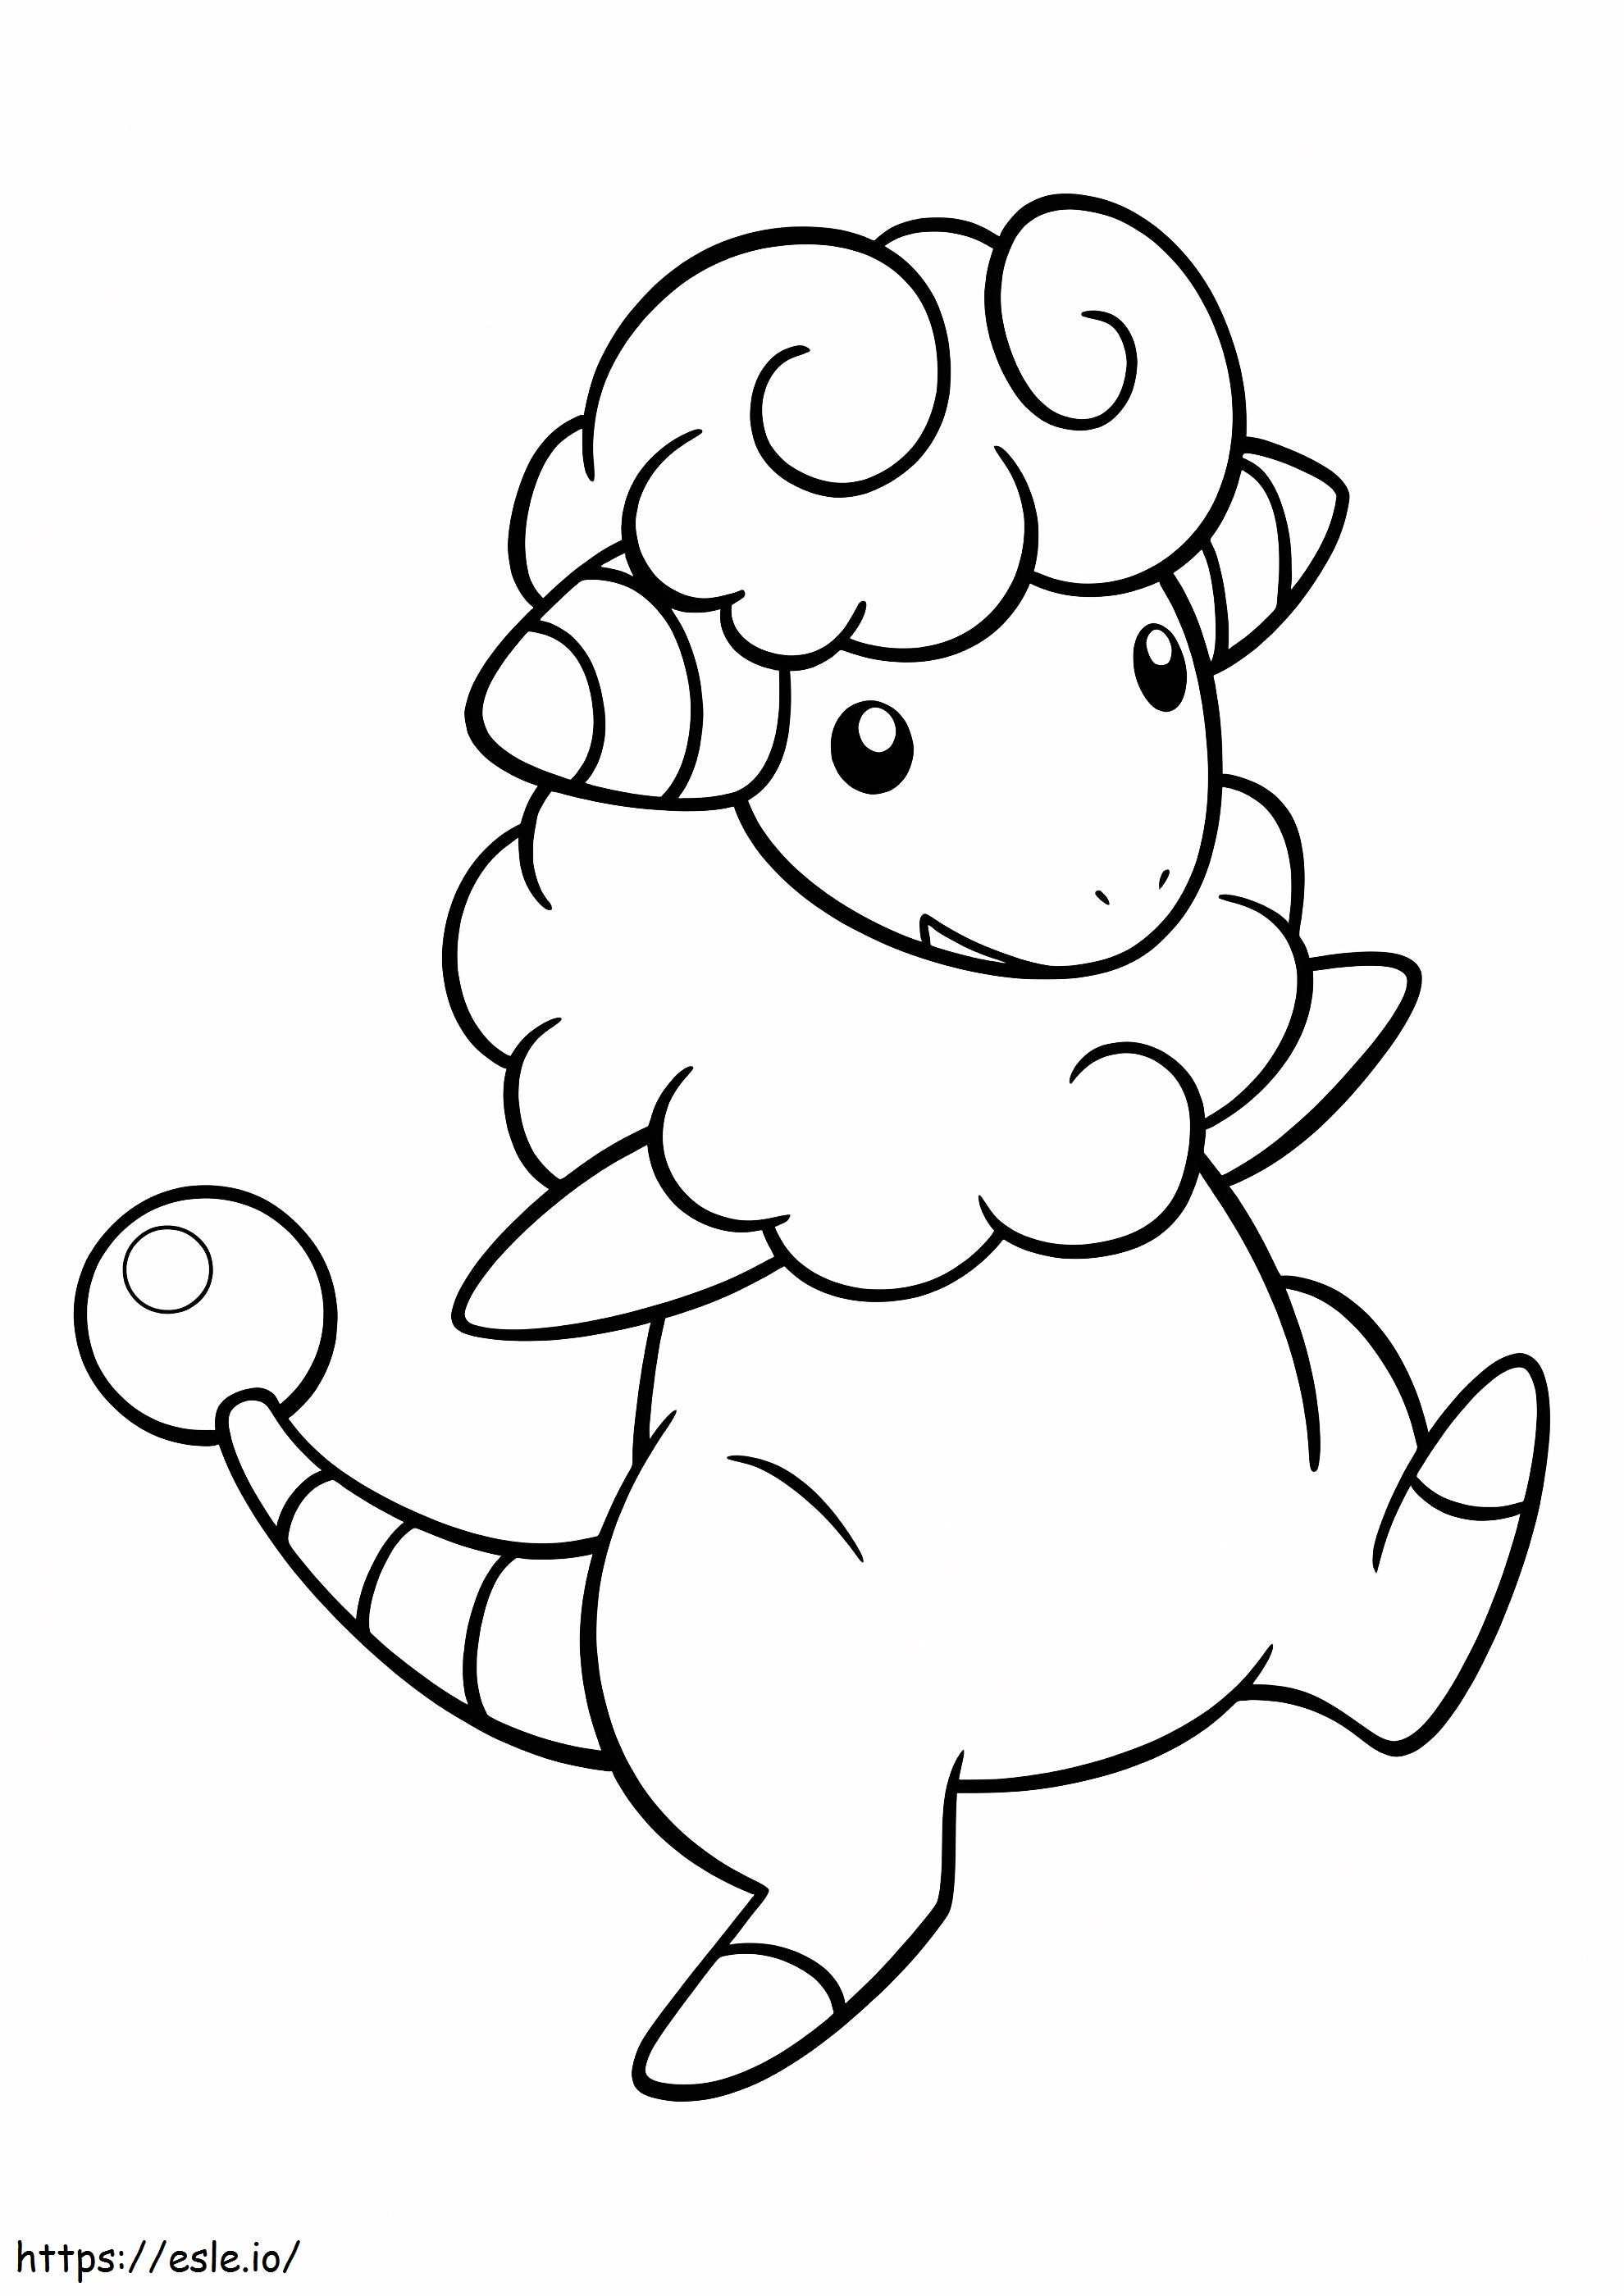 Coloriage Adorable Pokémon Flaaffy à imprimer dessin